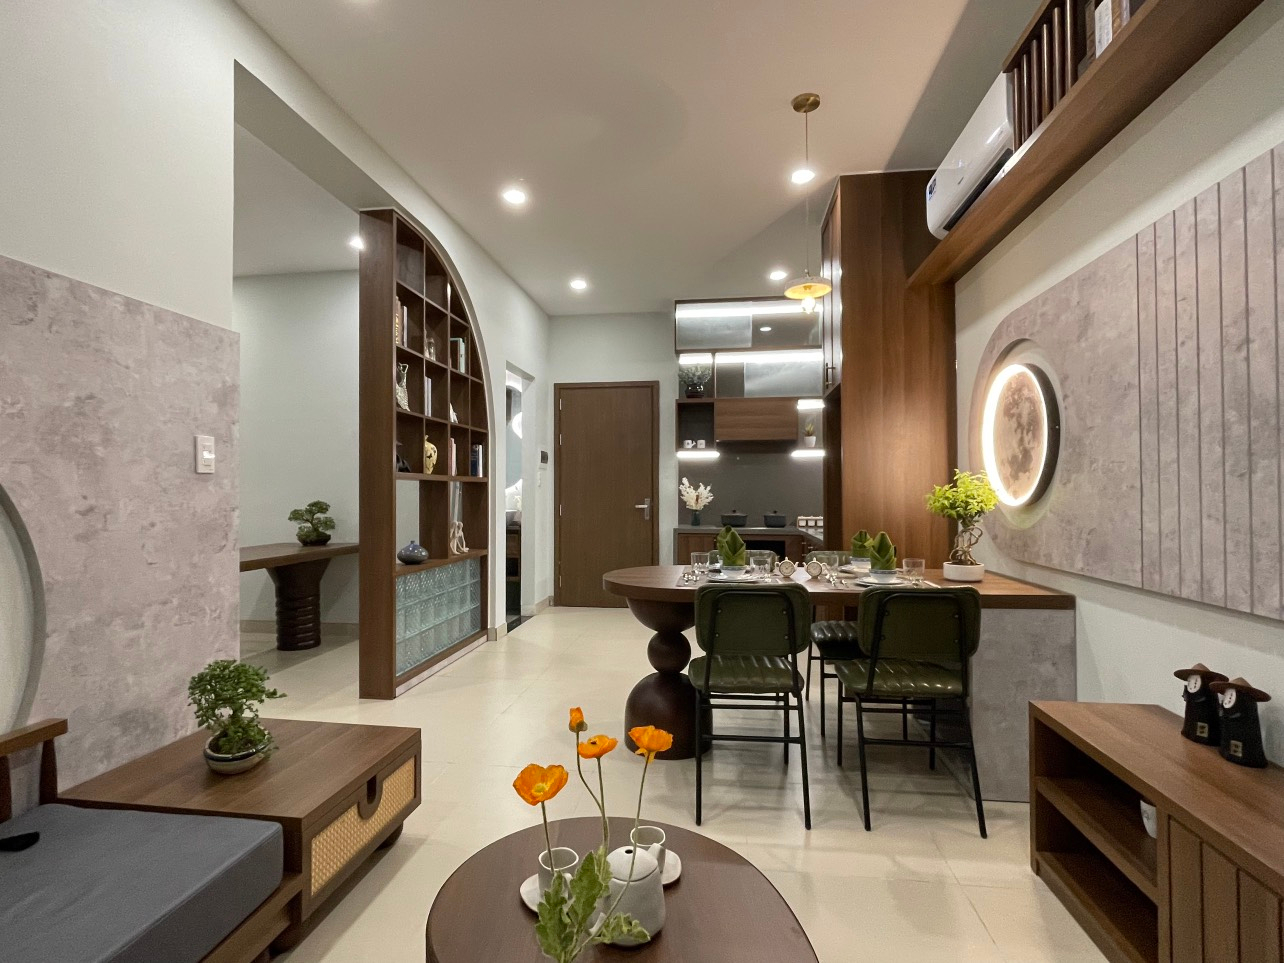 Khám phá căn hộ sống tiện nghi tại Tân Uyên chỉ từ 17,9 triệu/m2  - 1